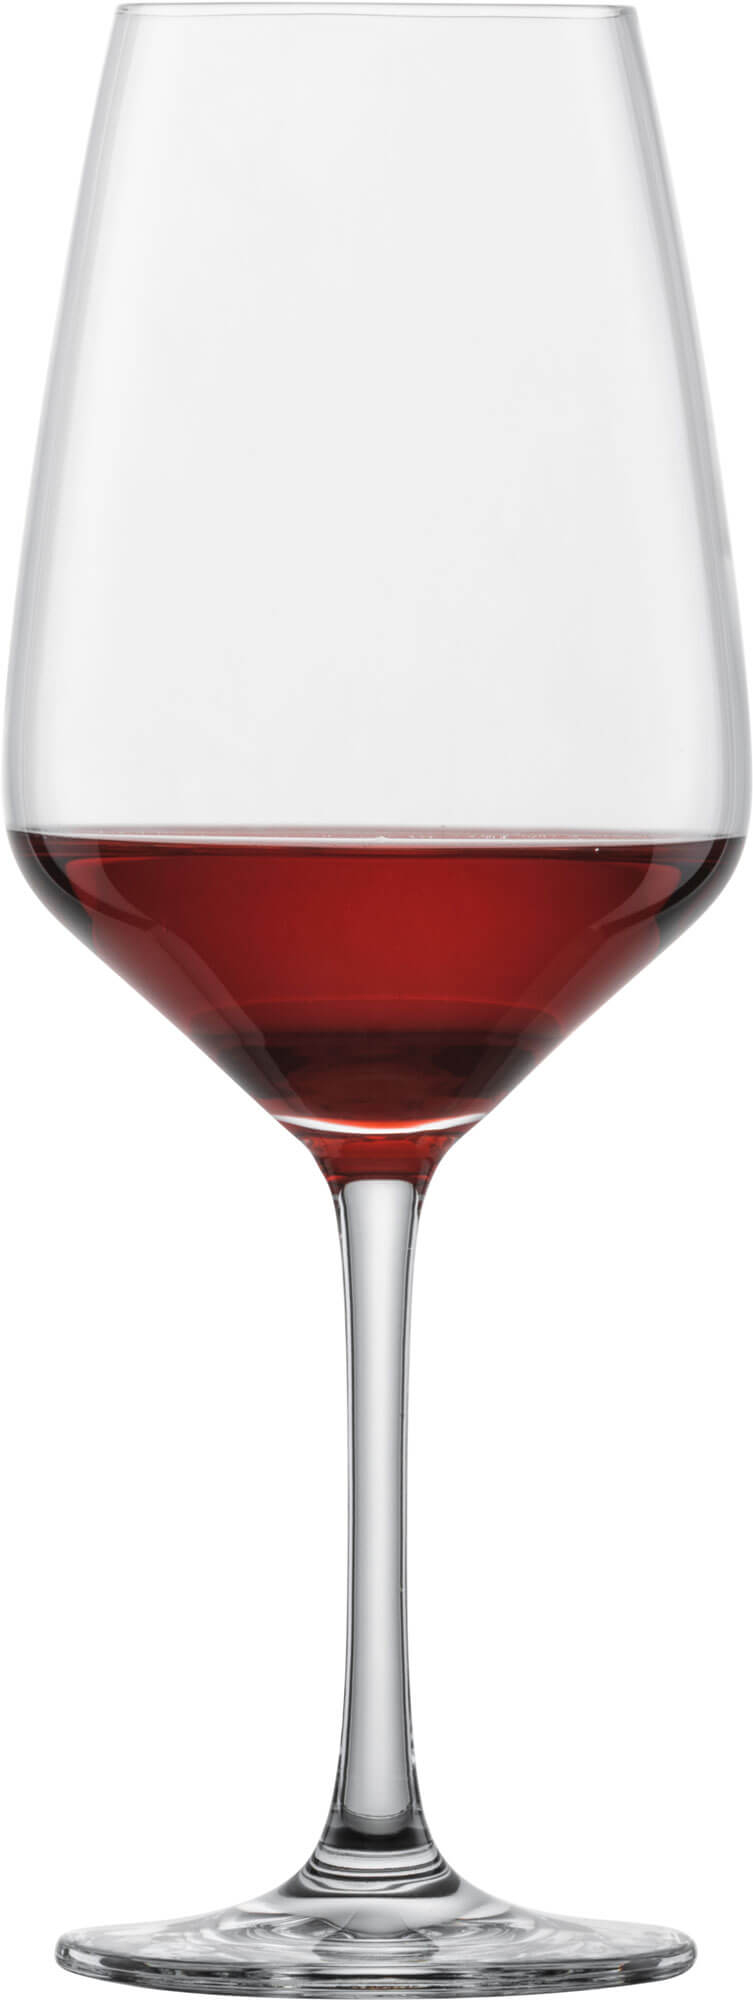 Red wine glass Taste, Schott Zwiesel - 497ml (1 pc.)